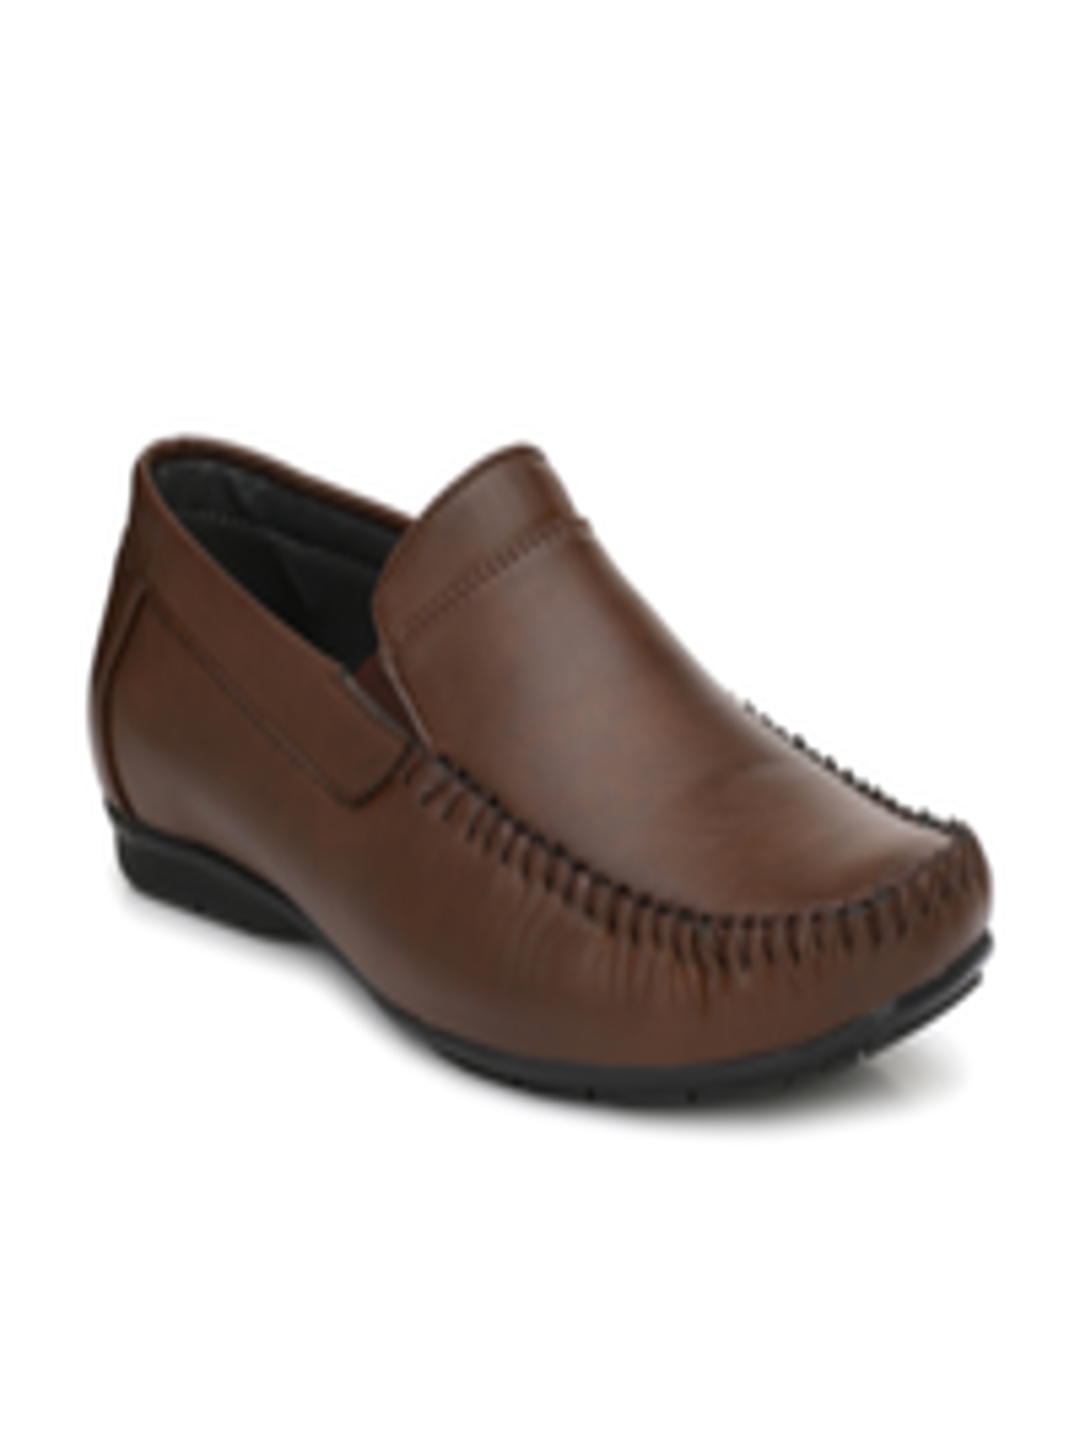 Buy Fentacia Men Brown Formal Slip Ons - Formal Shoes for Men 7563272 ...